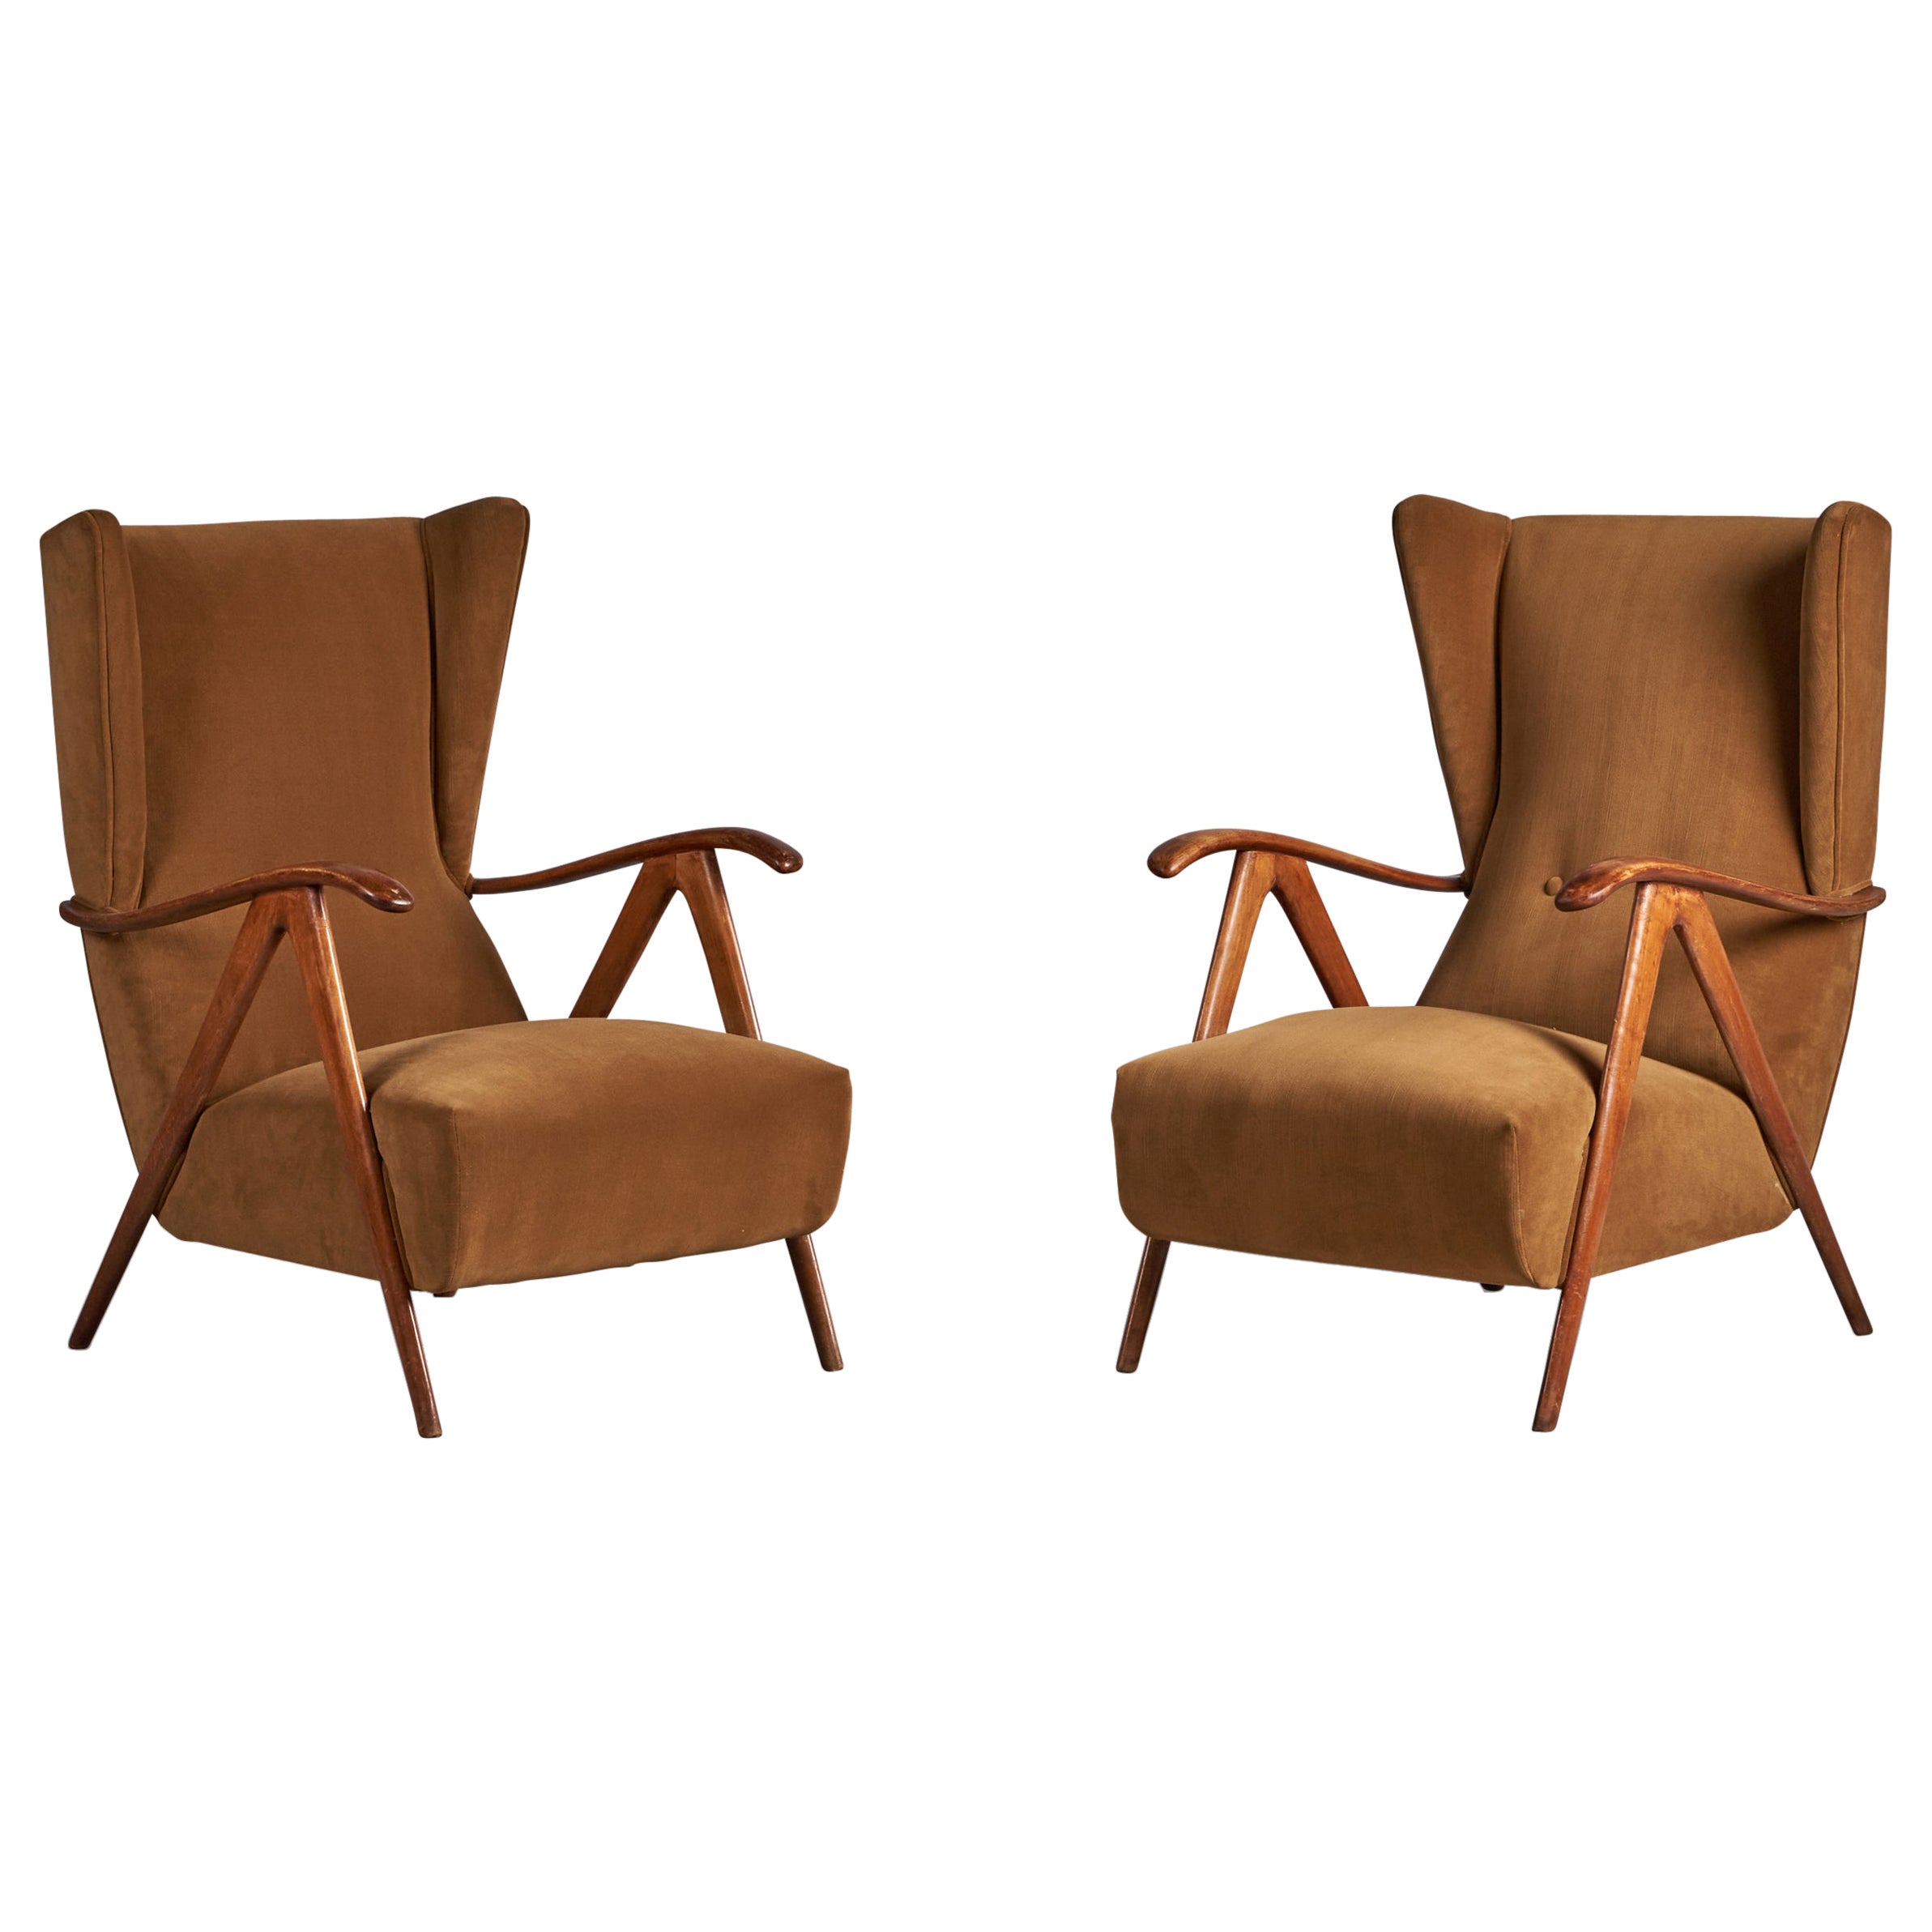 Italian Designer, Lounge Chairs, Walnut, Velvet, Italy, 1940s